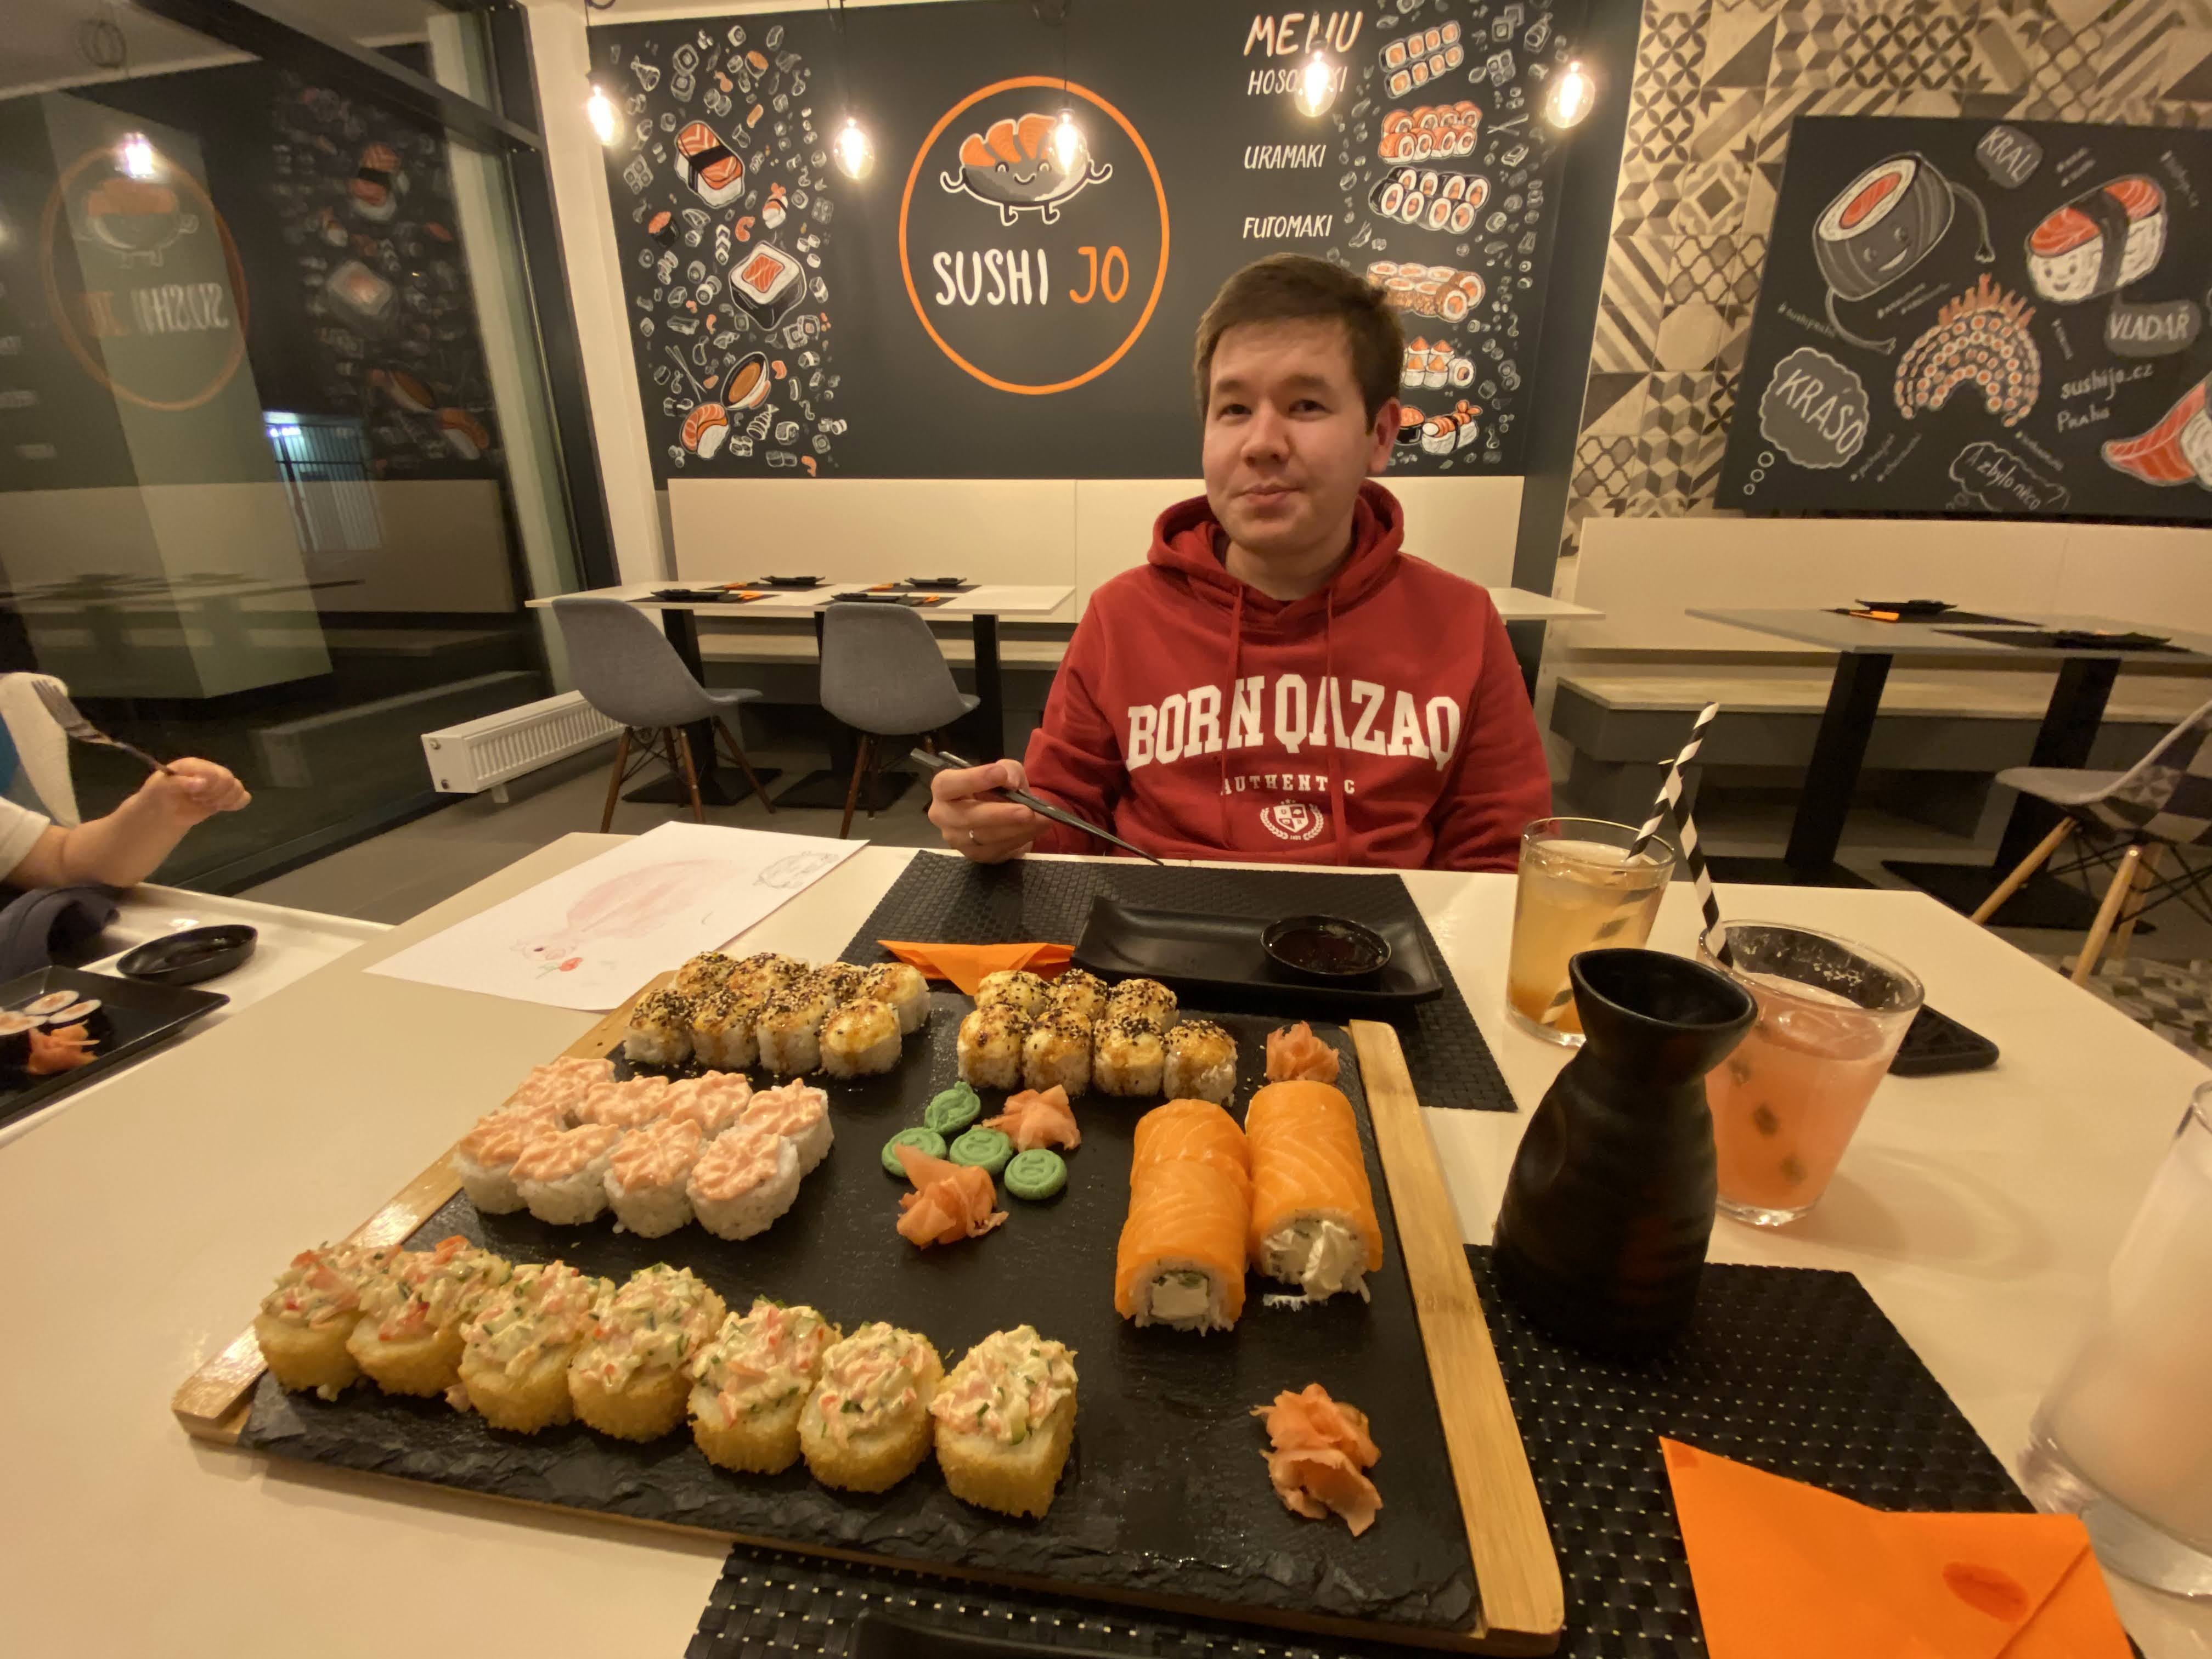 Aibol sitting in a sushi restaurant